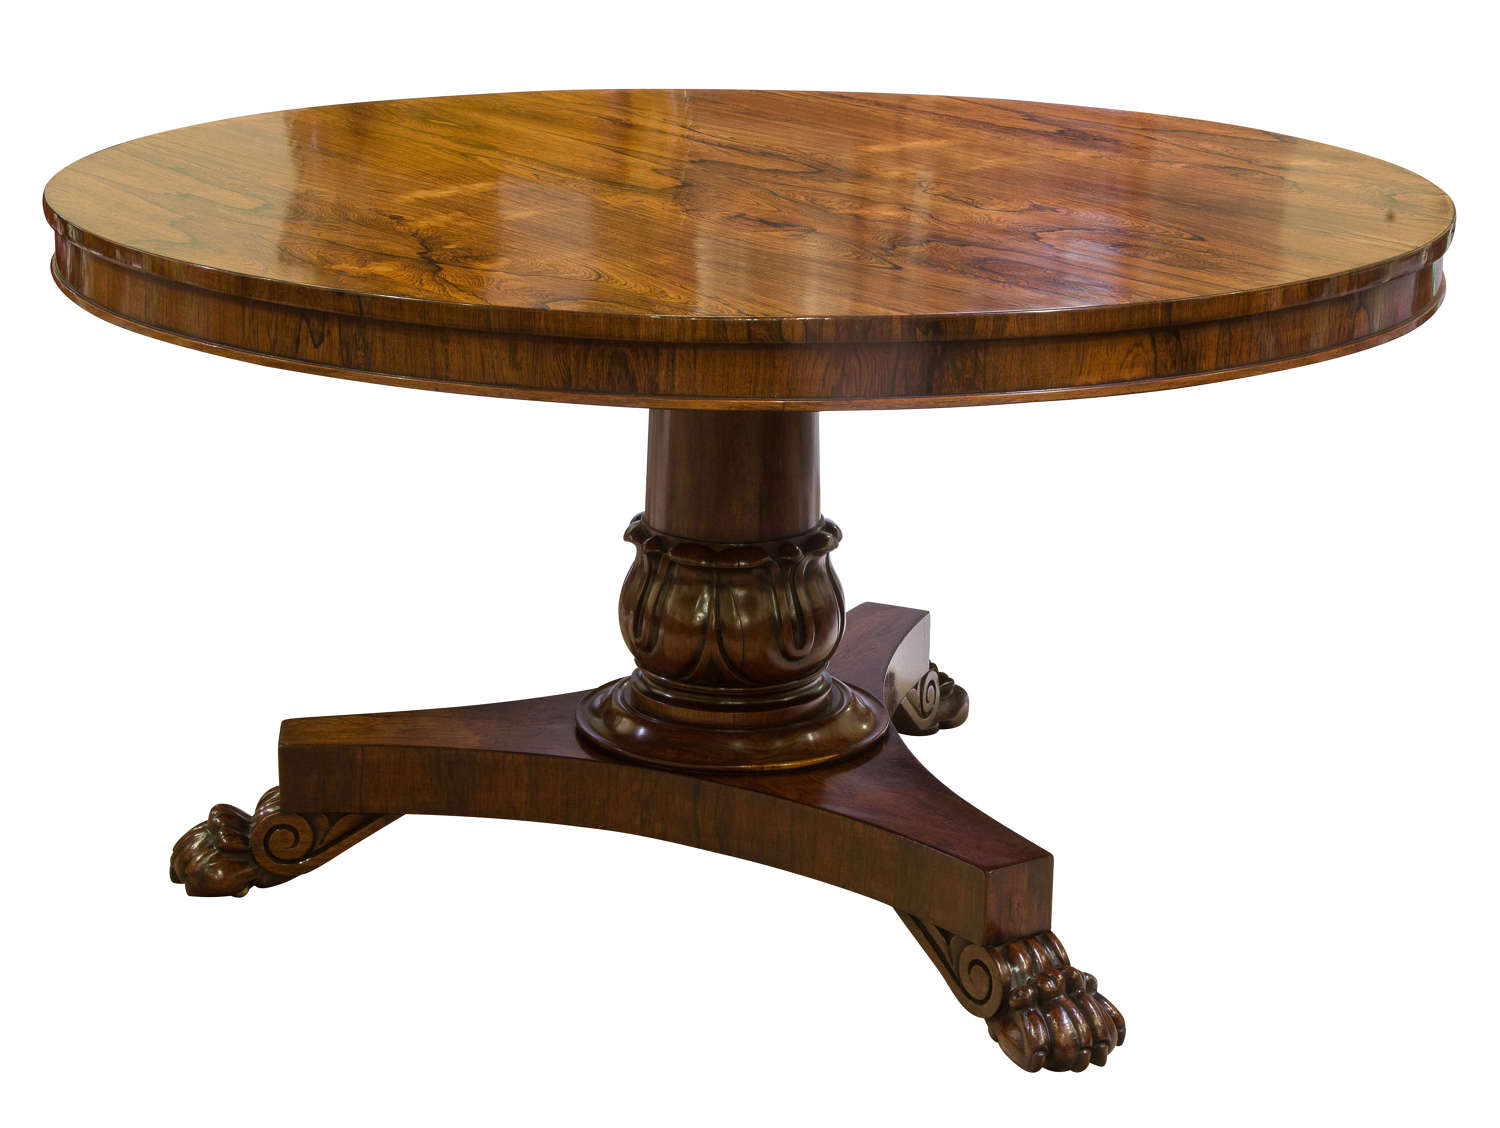 William IV period rosewood centre table